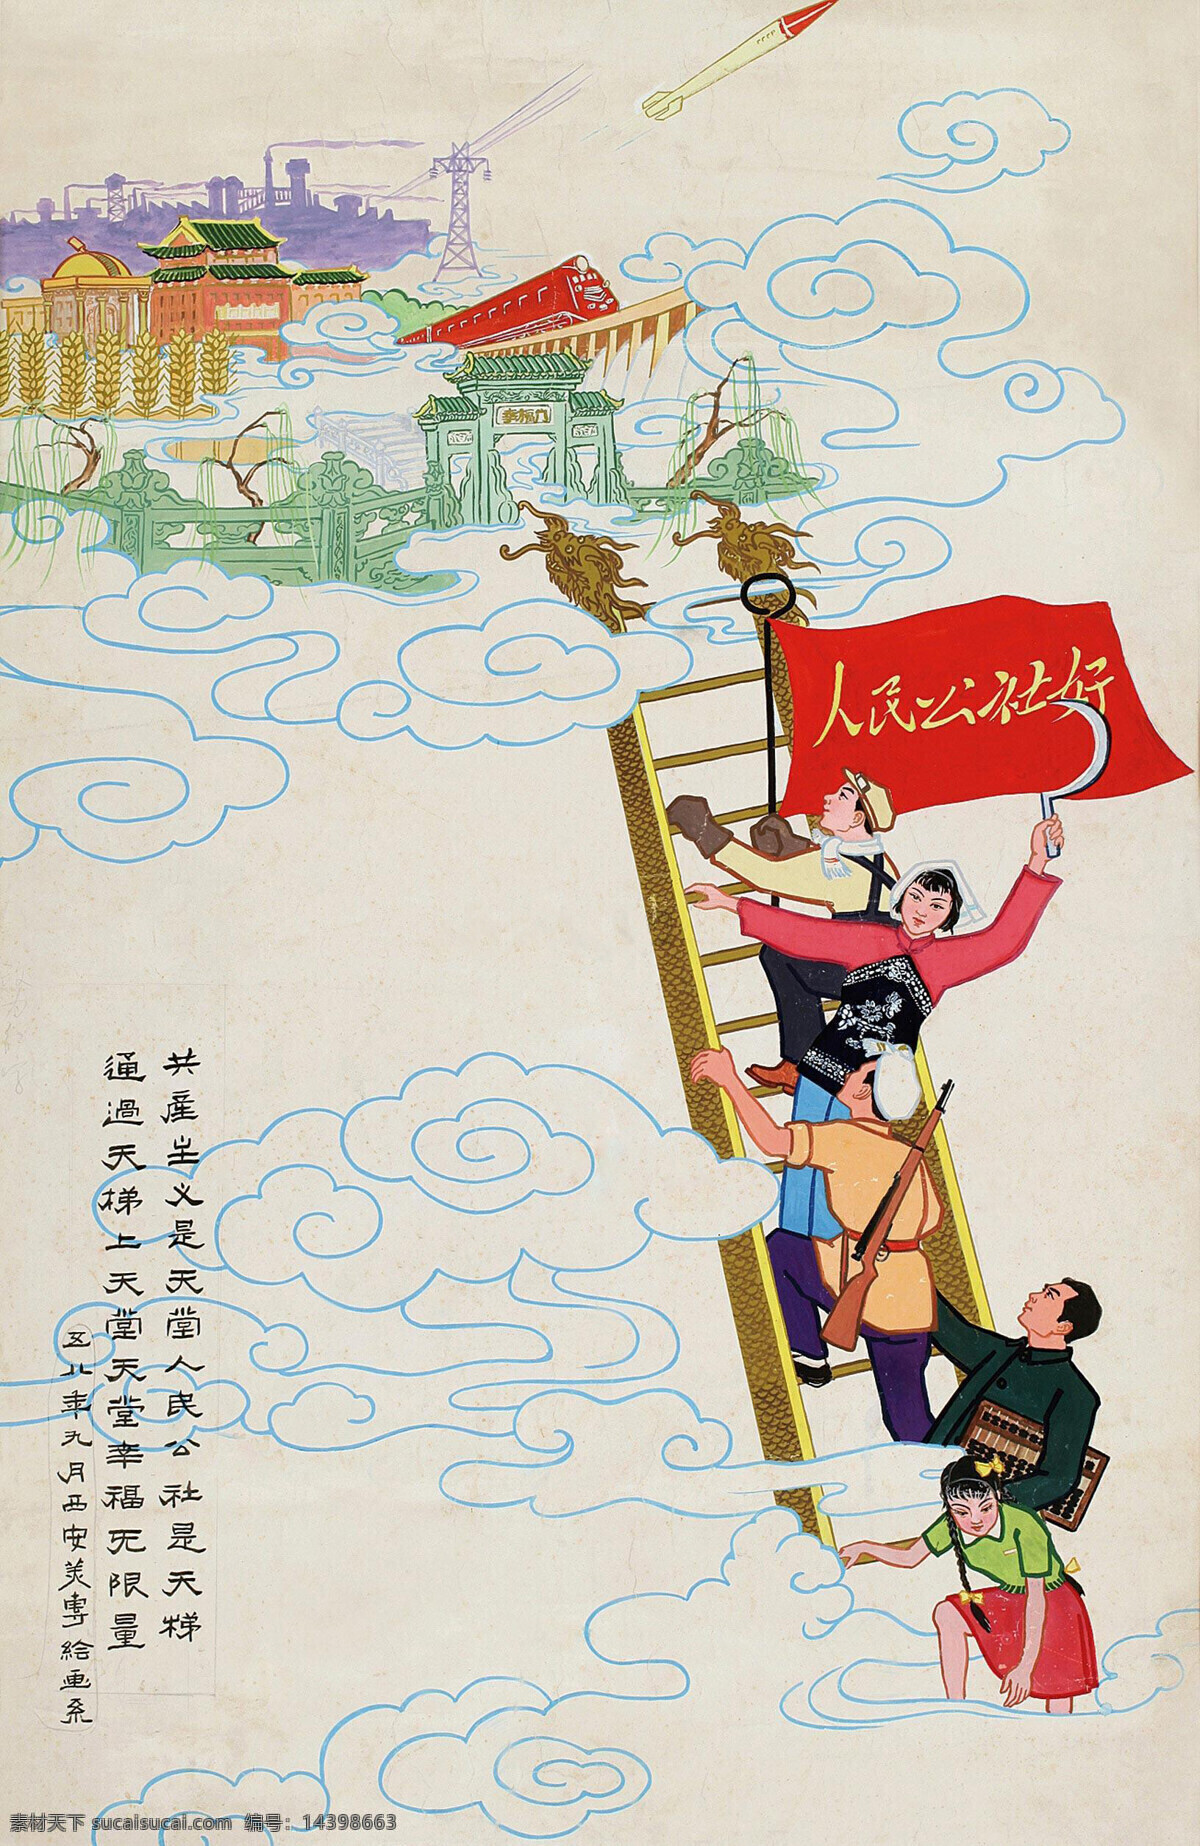 人物水彩画 人民公社好 1958年 大跃进 共产主义 天堂 天梯 绘画书法 文化艺术